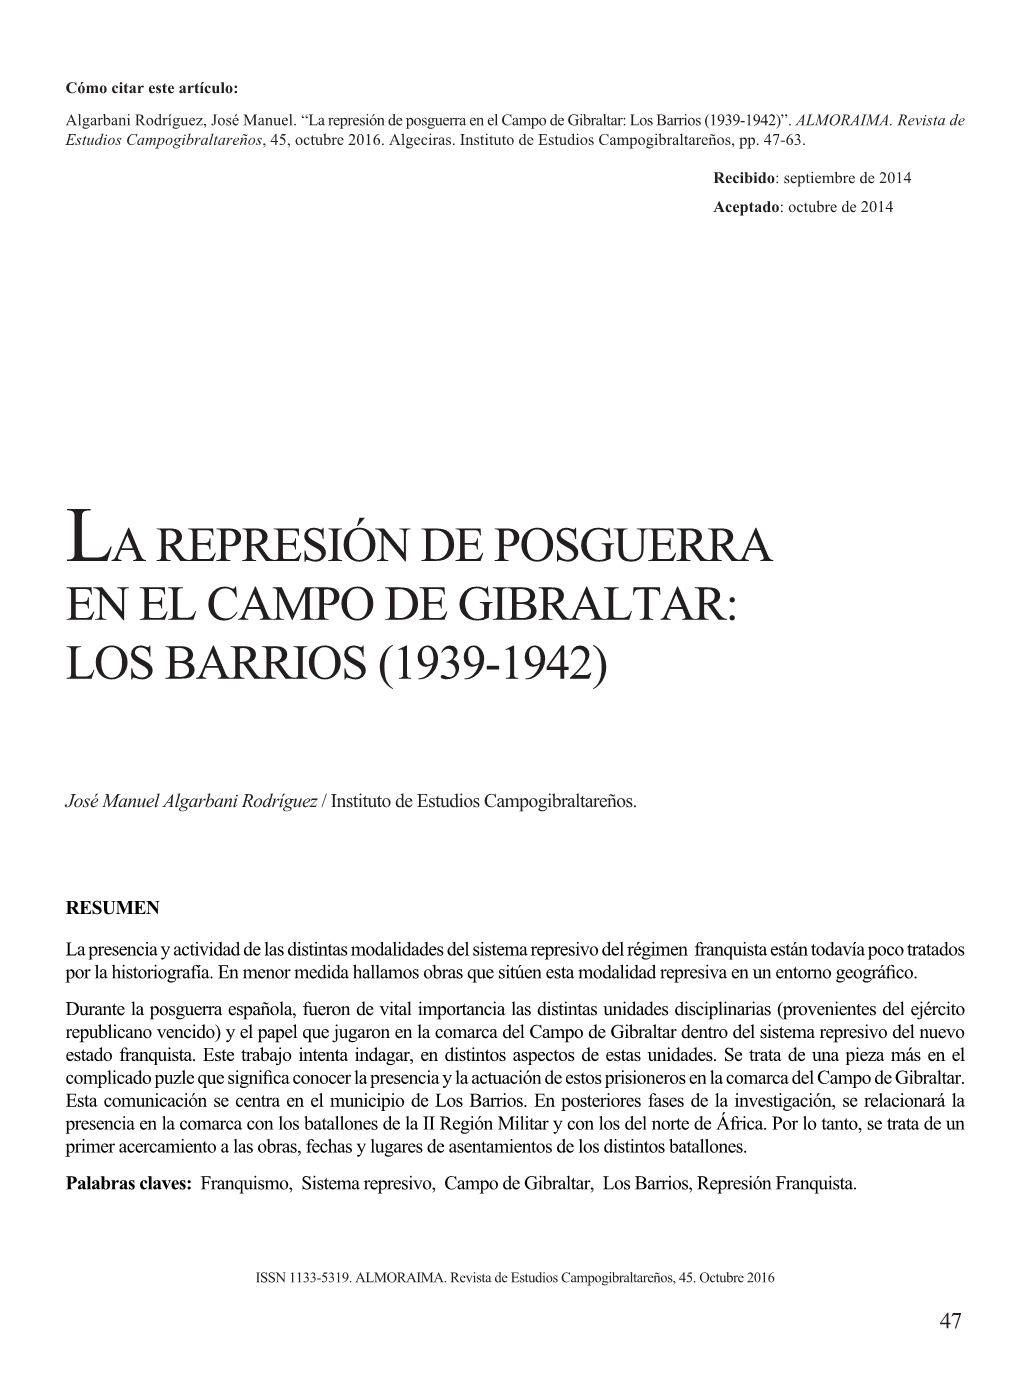 La Represión De Posguerra En El Campo De Gibraltar: Los Barrios (1939-1942)”